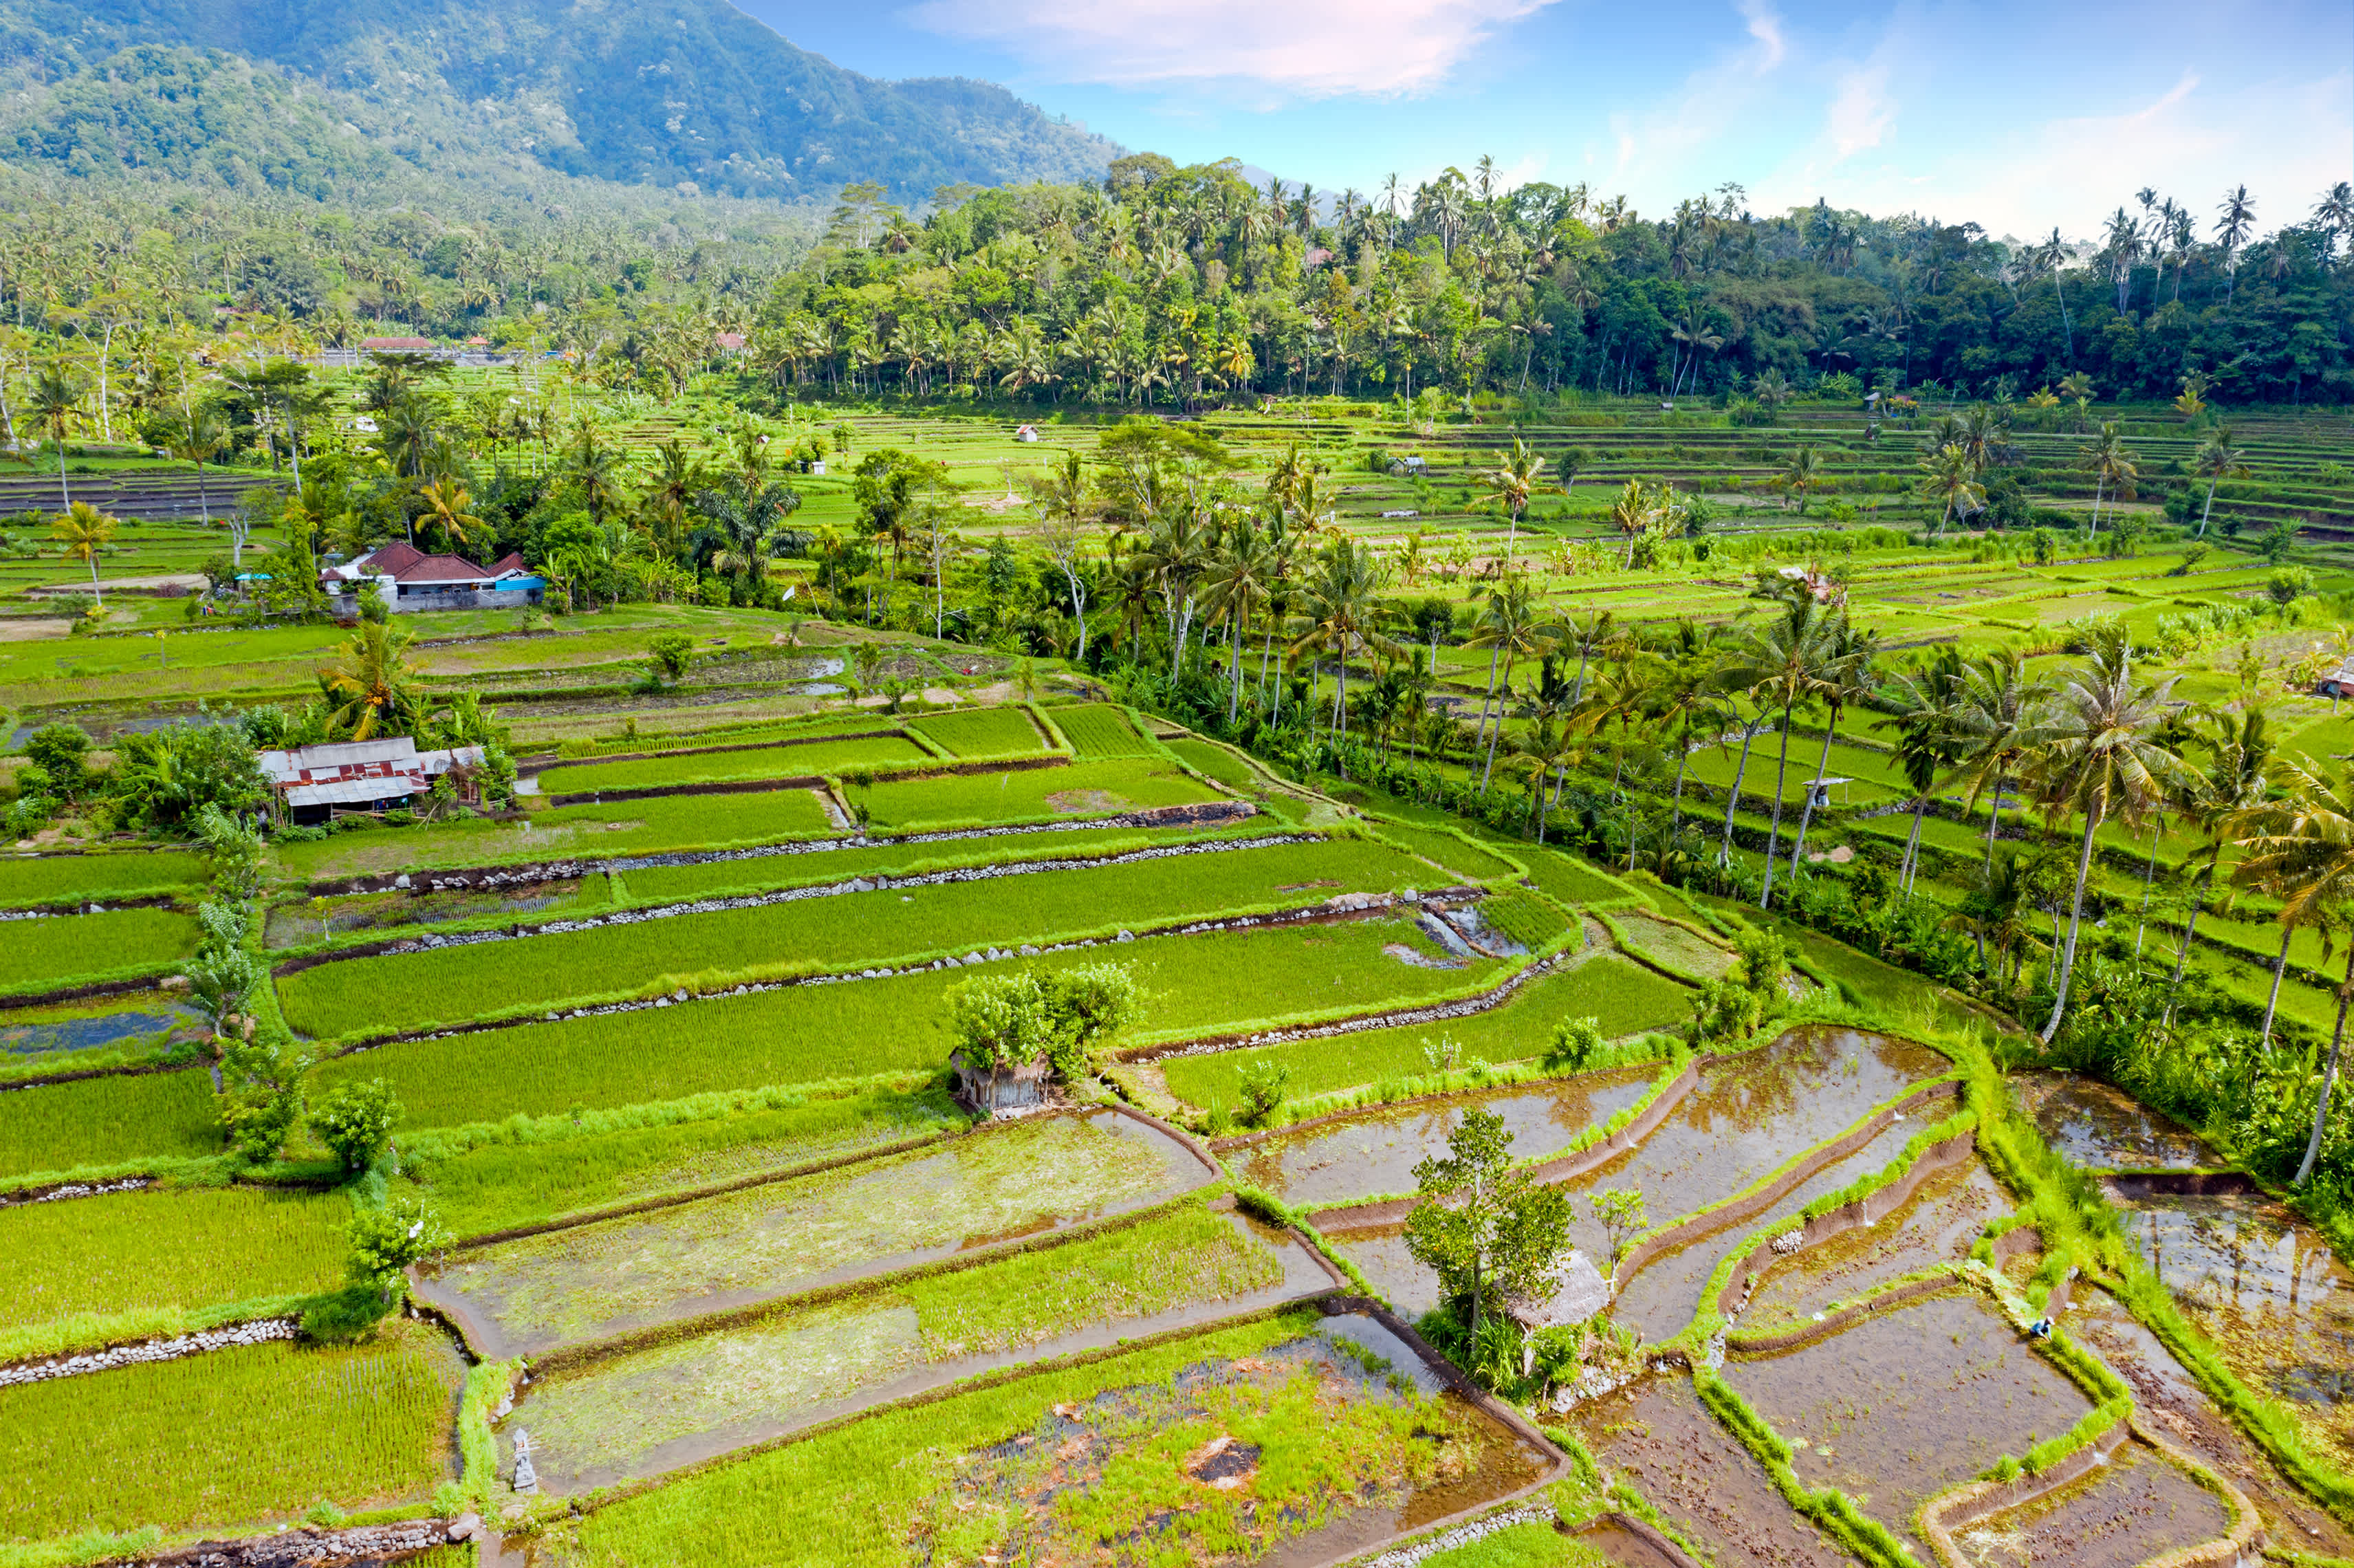 Luftaufnahme von Reisterrassen in Sidemen auf Bali, Indonesien

